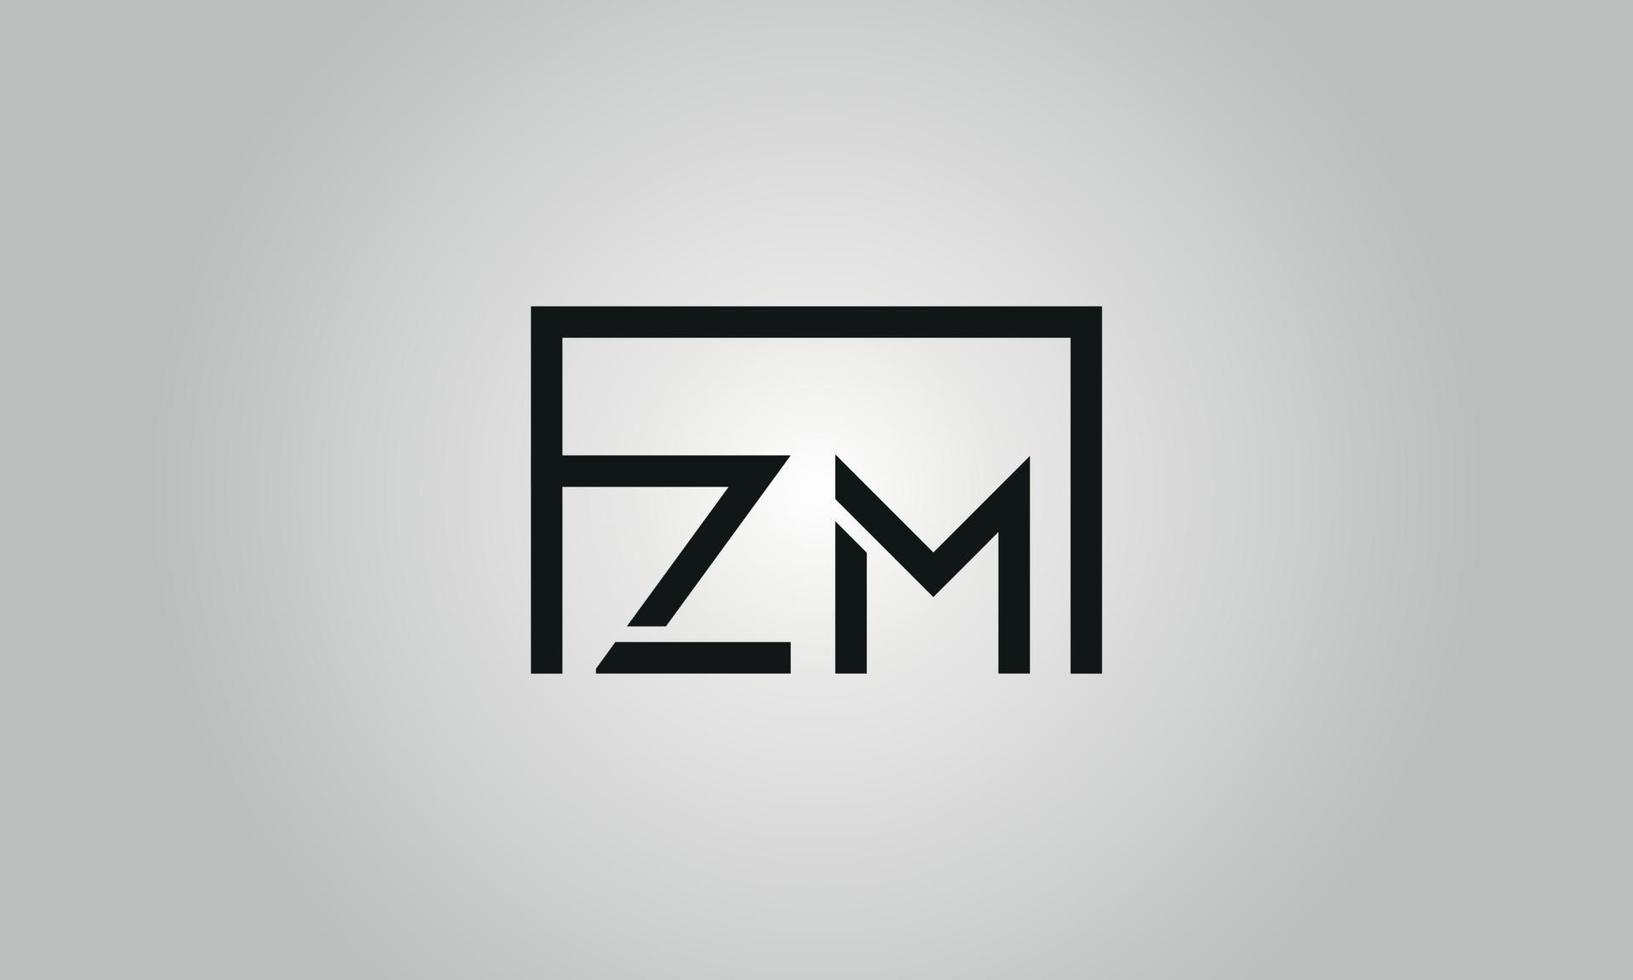 création de logo lettre zm. logo zm avec forme carrée dans le modèle vectoriel gratuit de couleurs noires.